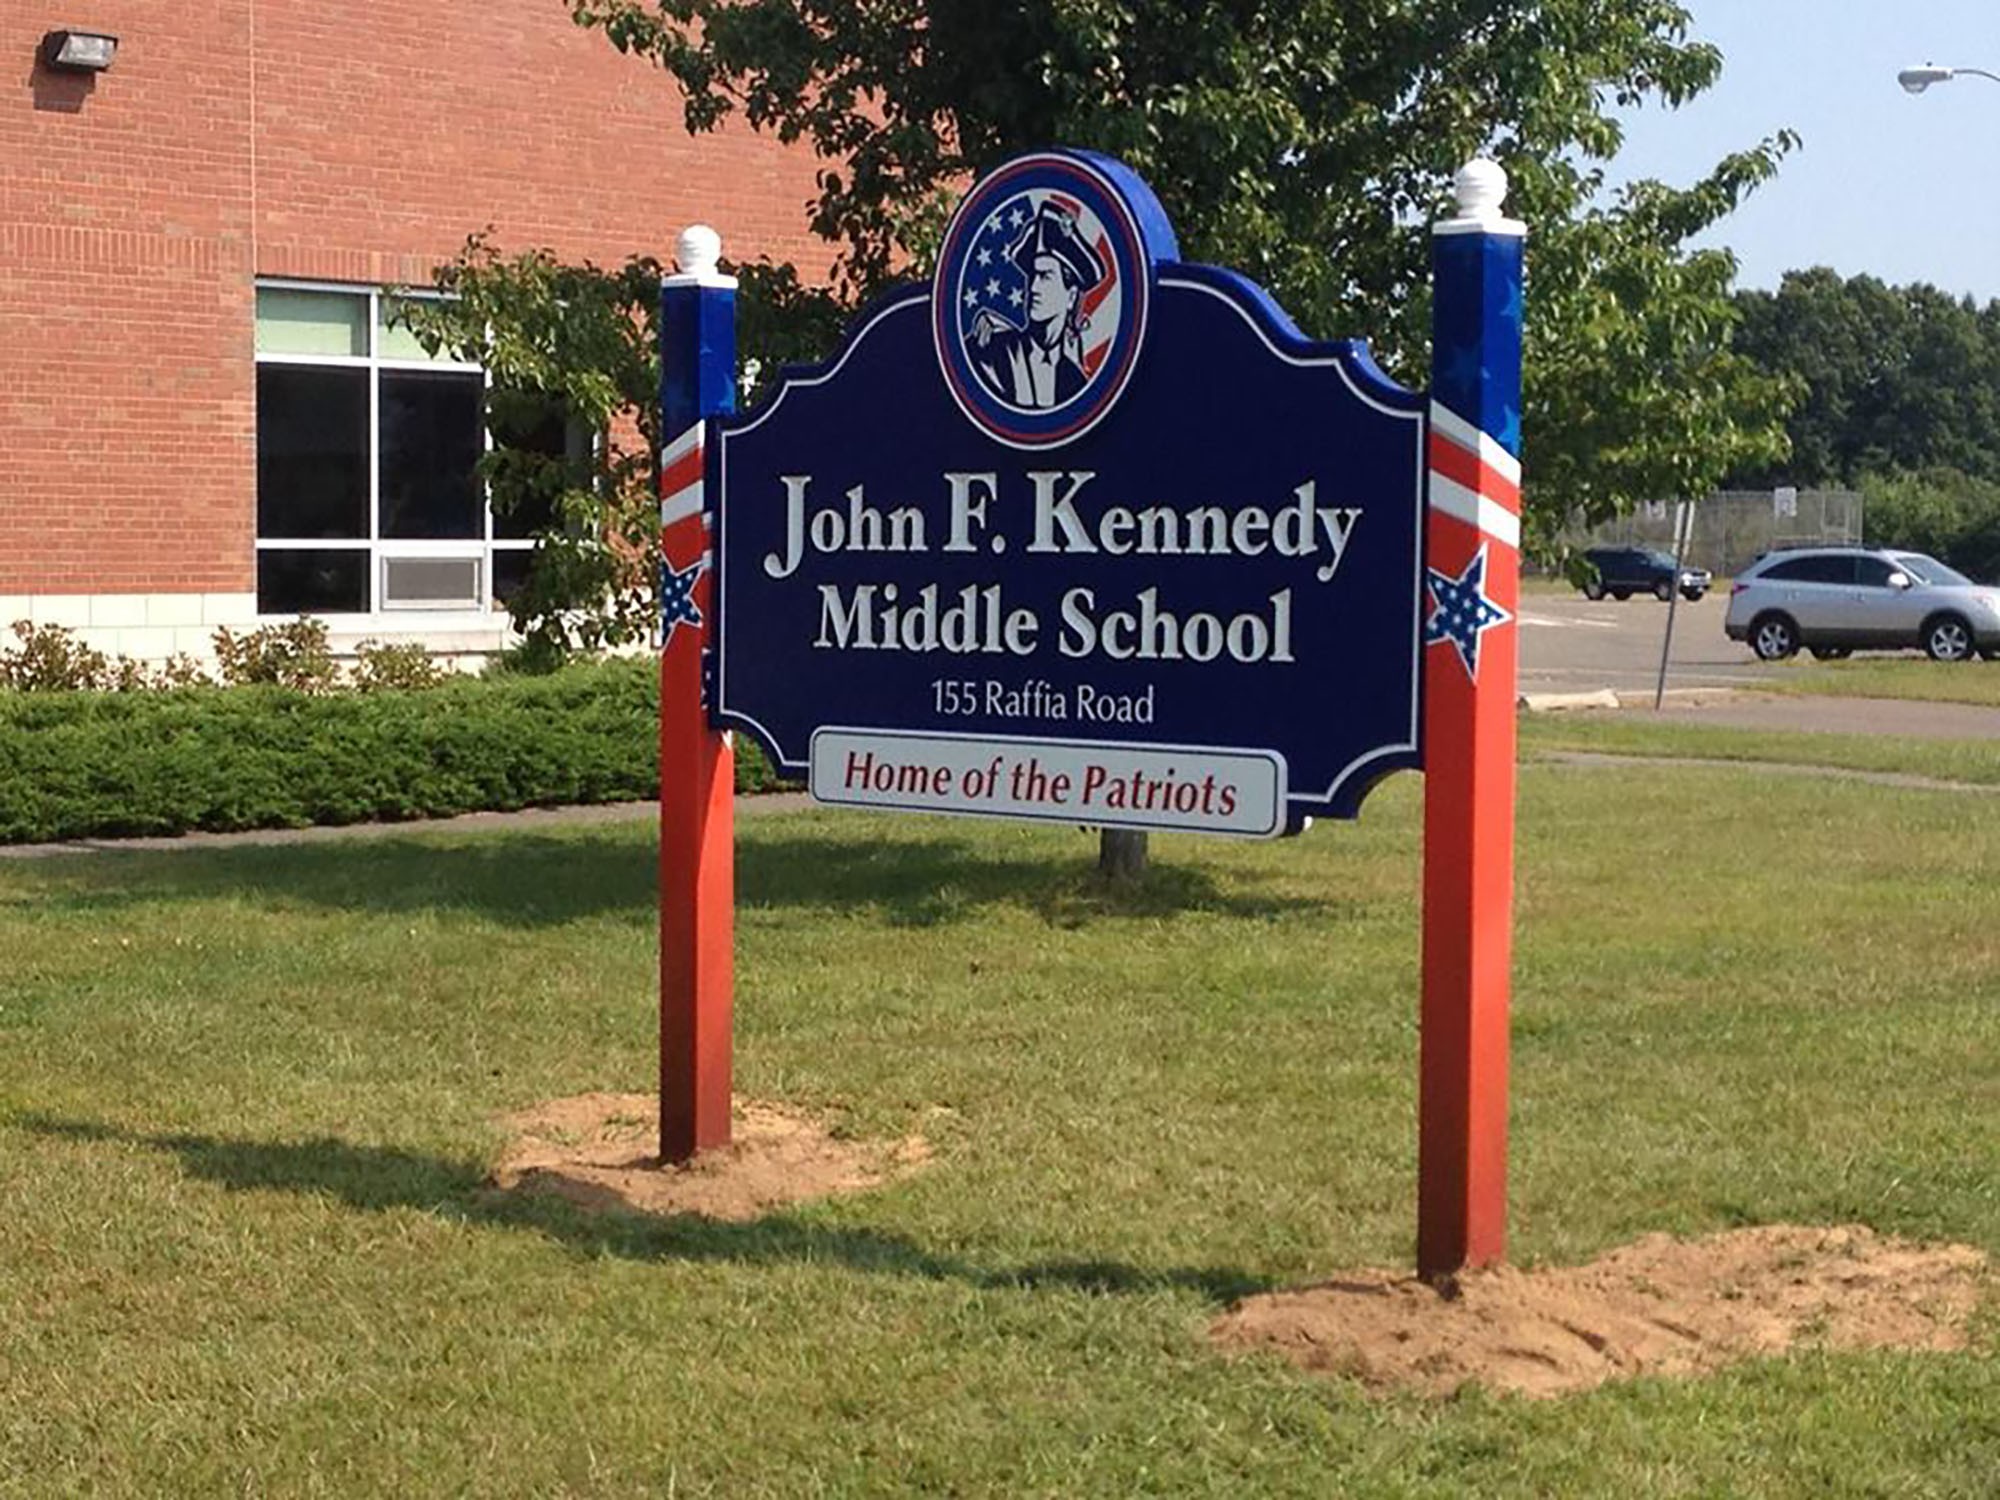 John F. Kennedy Middle School, escola que gerou revolta dos pais (Foto: divulgação)